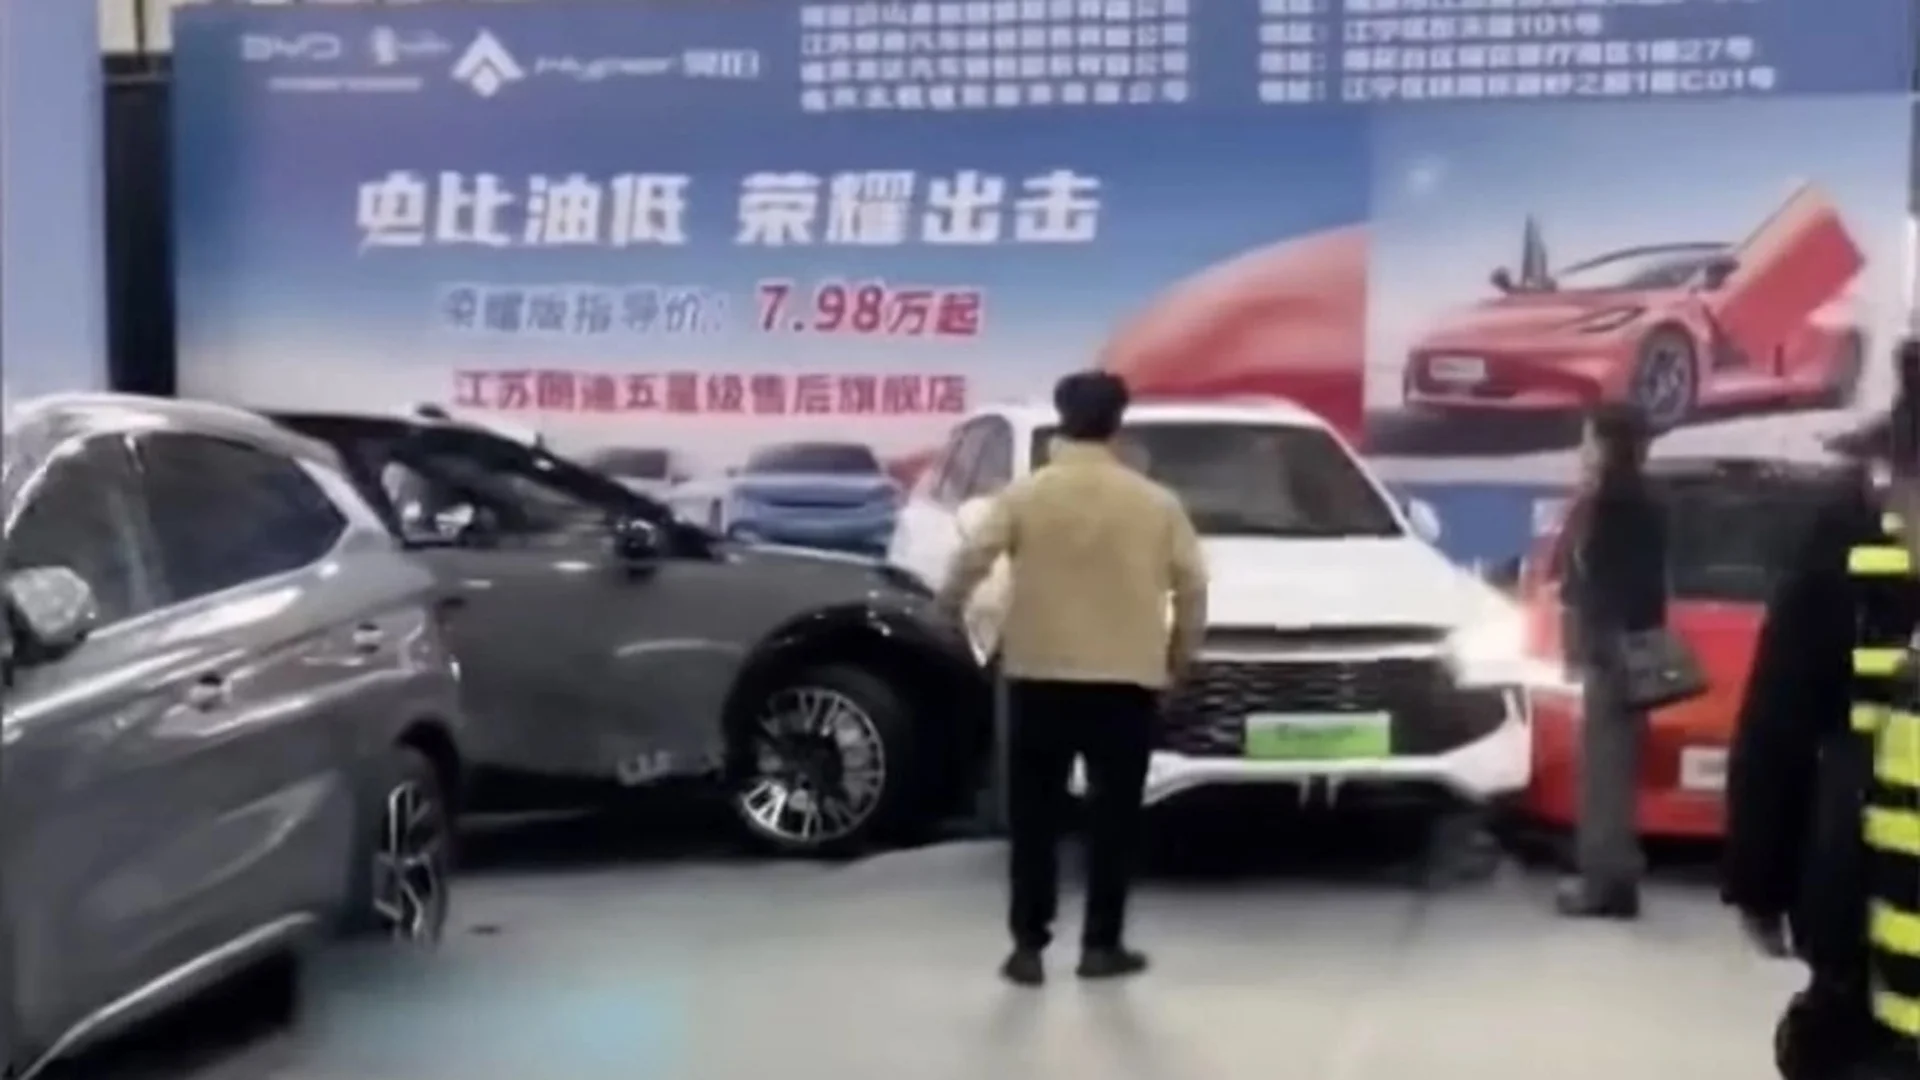 Електрическа кола блъсна петима души на изложение в Китай (ВИДЕО)